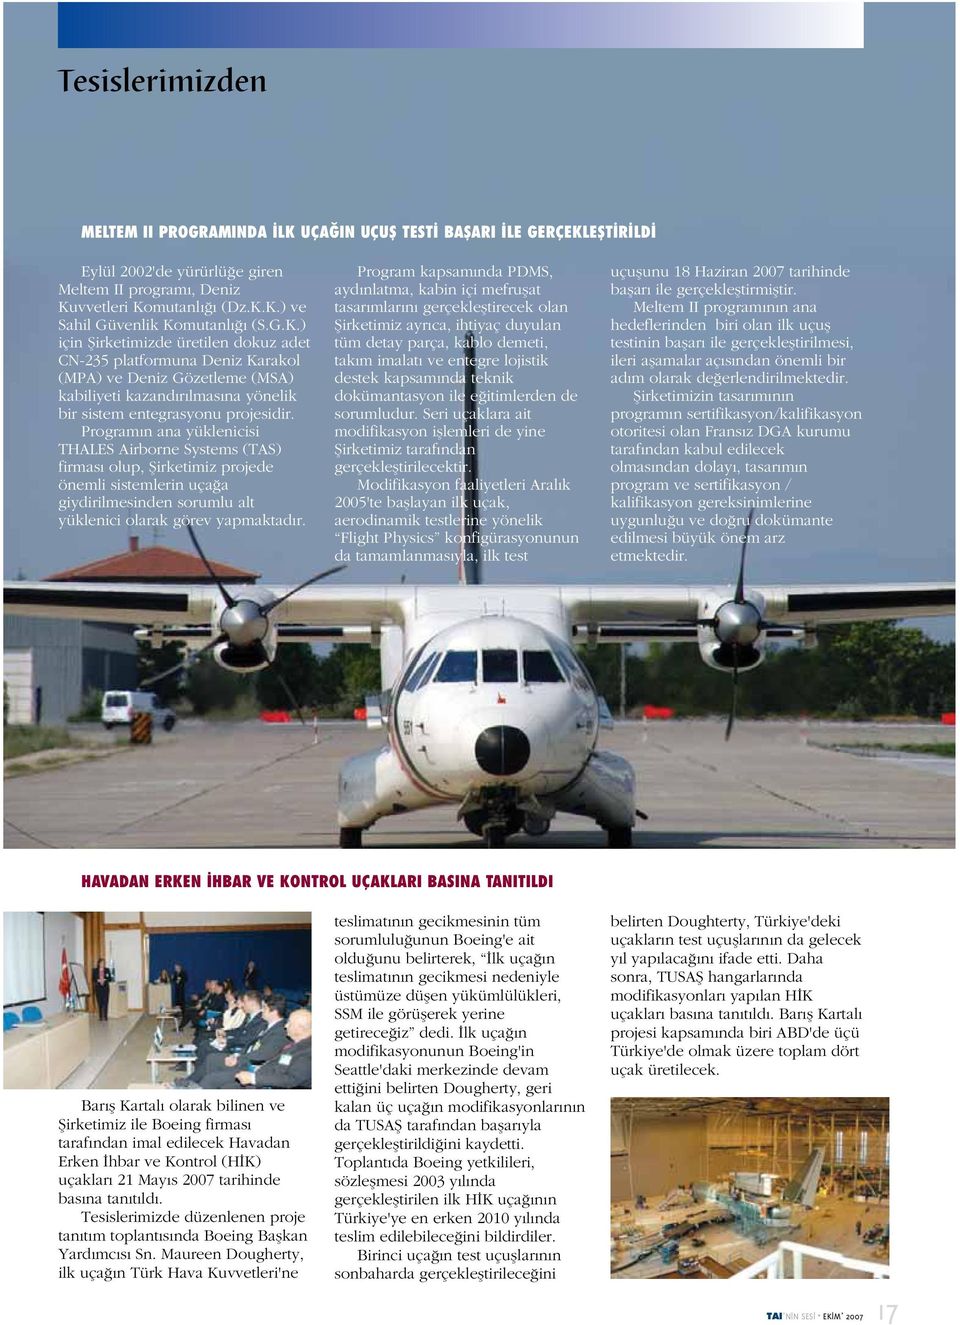 Programın ana yüklenicisi THALES Airborne Systems (TAS) firması olup, Şirketimiz projede önemli sistemlerin uçağa giydirilmesinden sorumlu alt yüklenici olarak görev yapmaktadır.